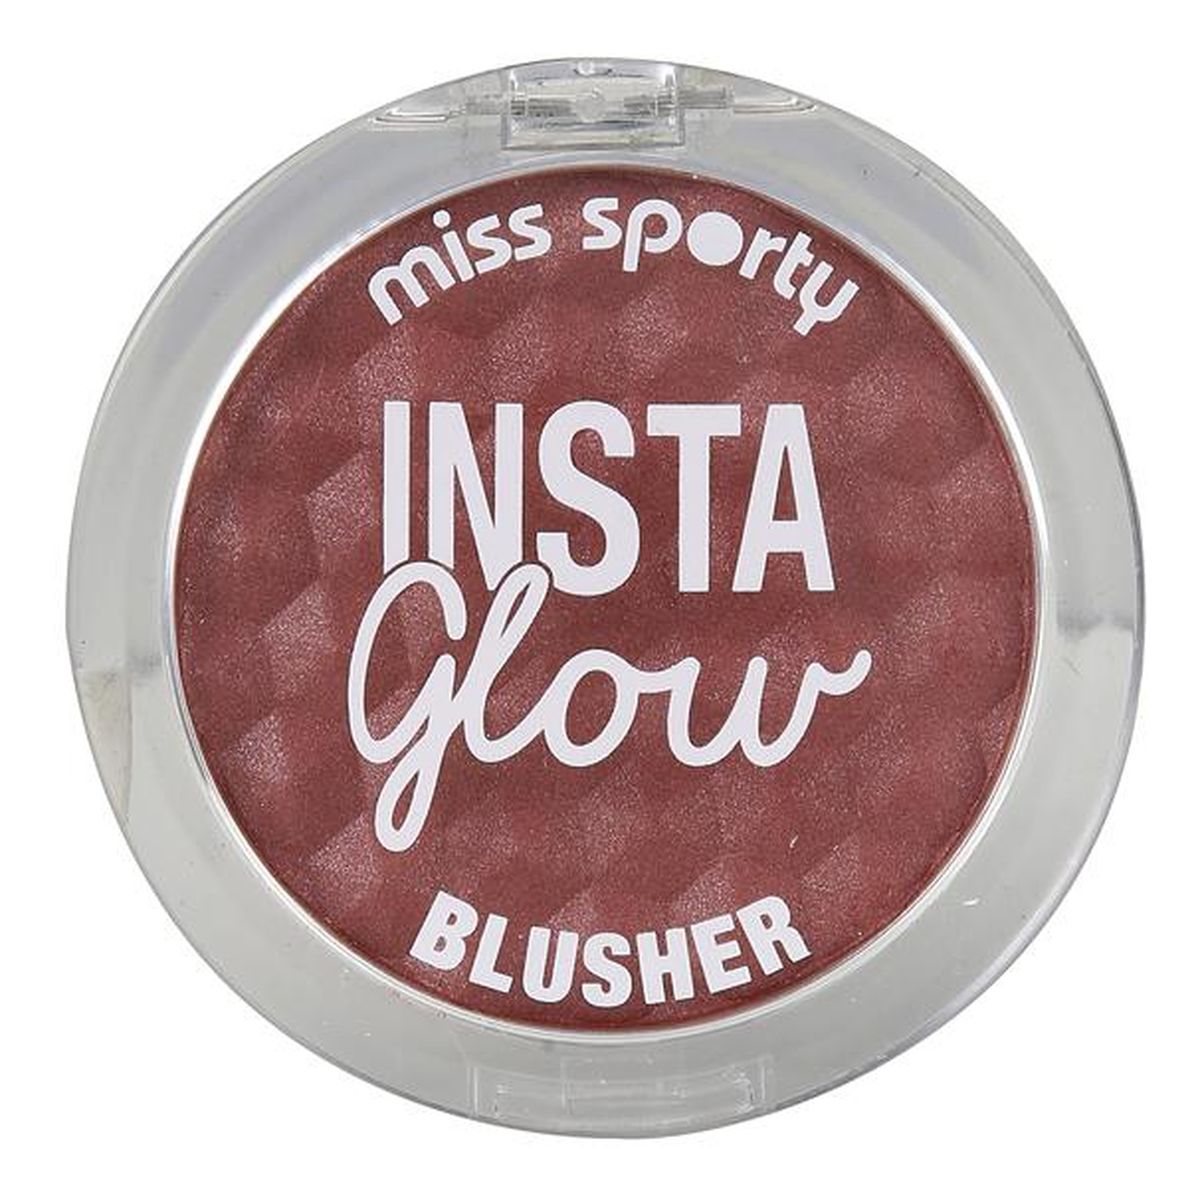 Miss Sporty Insta Glow Blusher Róż do policzków 5g